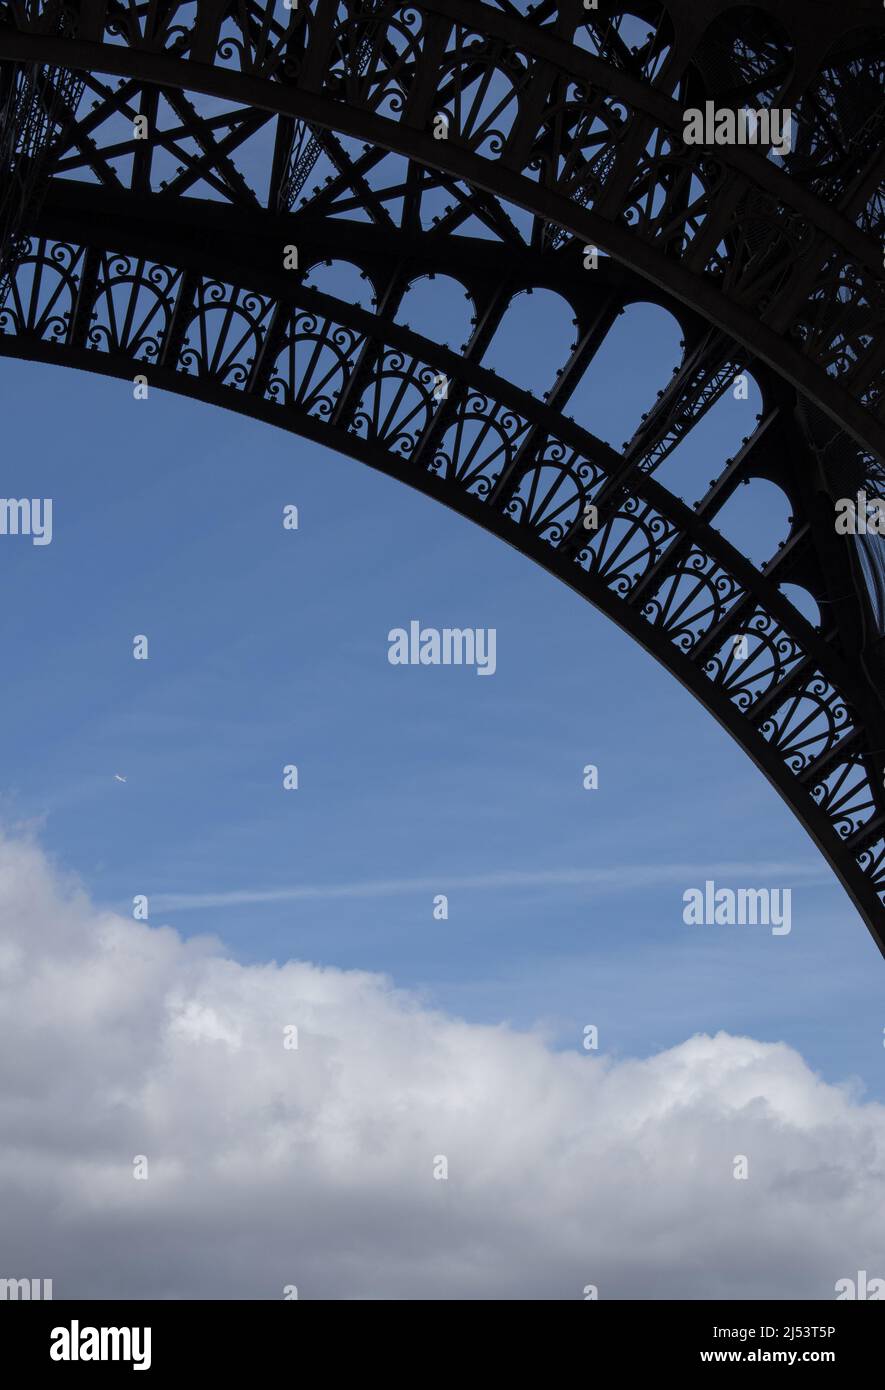 Paris, France, Europe: Détails des frises Art Nouveau de la Tour Eiffel, tour métallique achevée en 1889 pour l'exposition universelle Banque D'Images